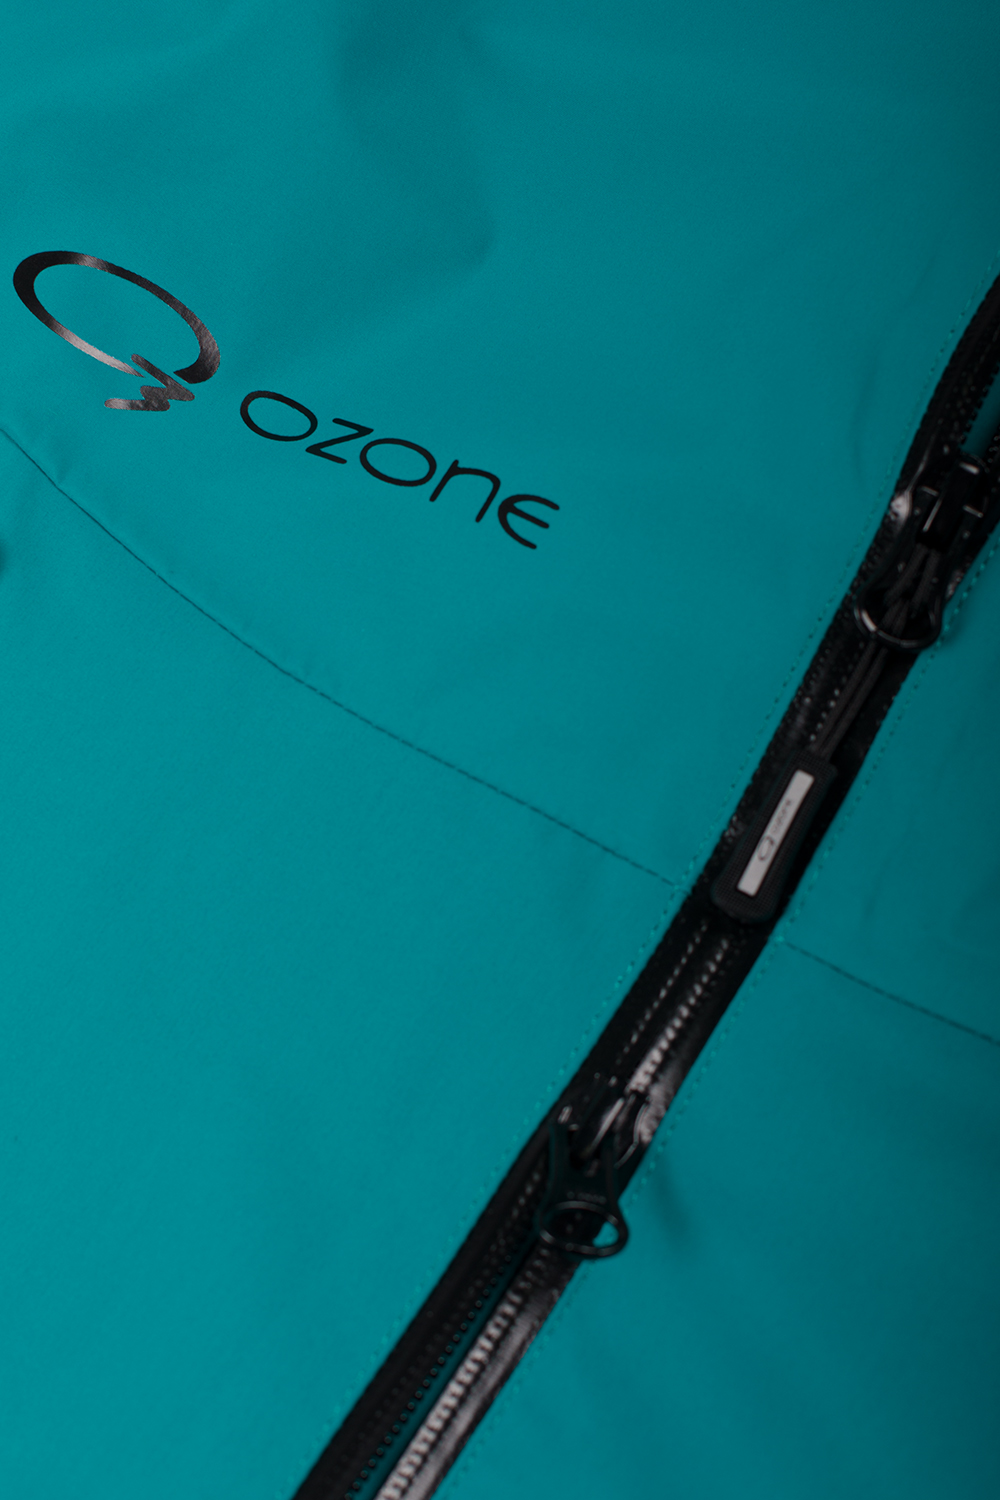 Мембранная куртка Rex купить в O3 Ozone